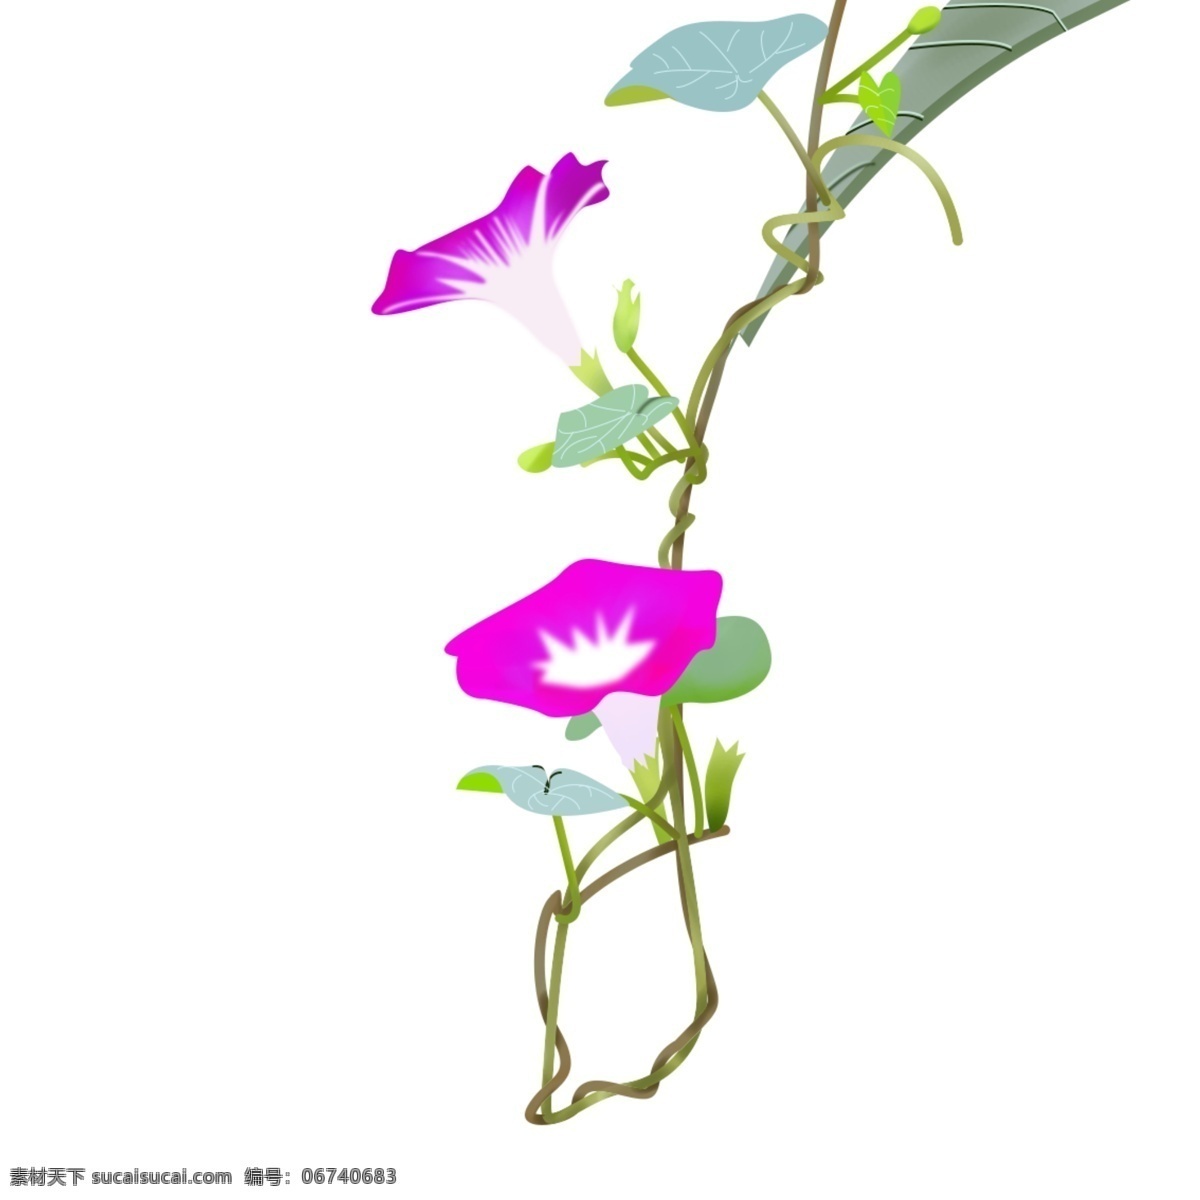 夏季 二十四节气 牵牛花 元素 设计元素 花朵 紫色花 小满 传统节气 牵牛花藤 根茎